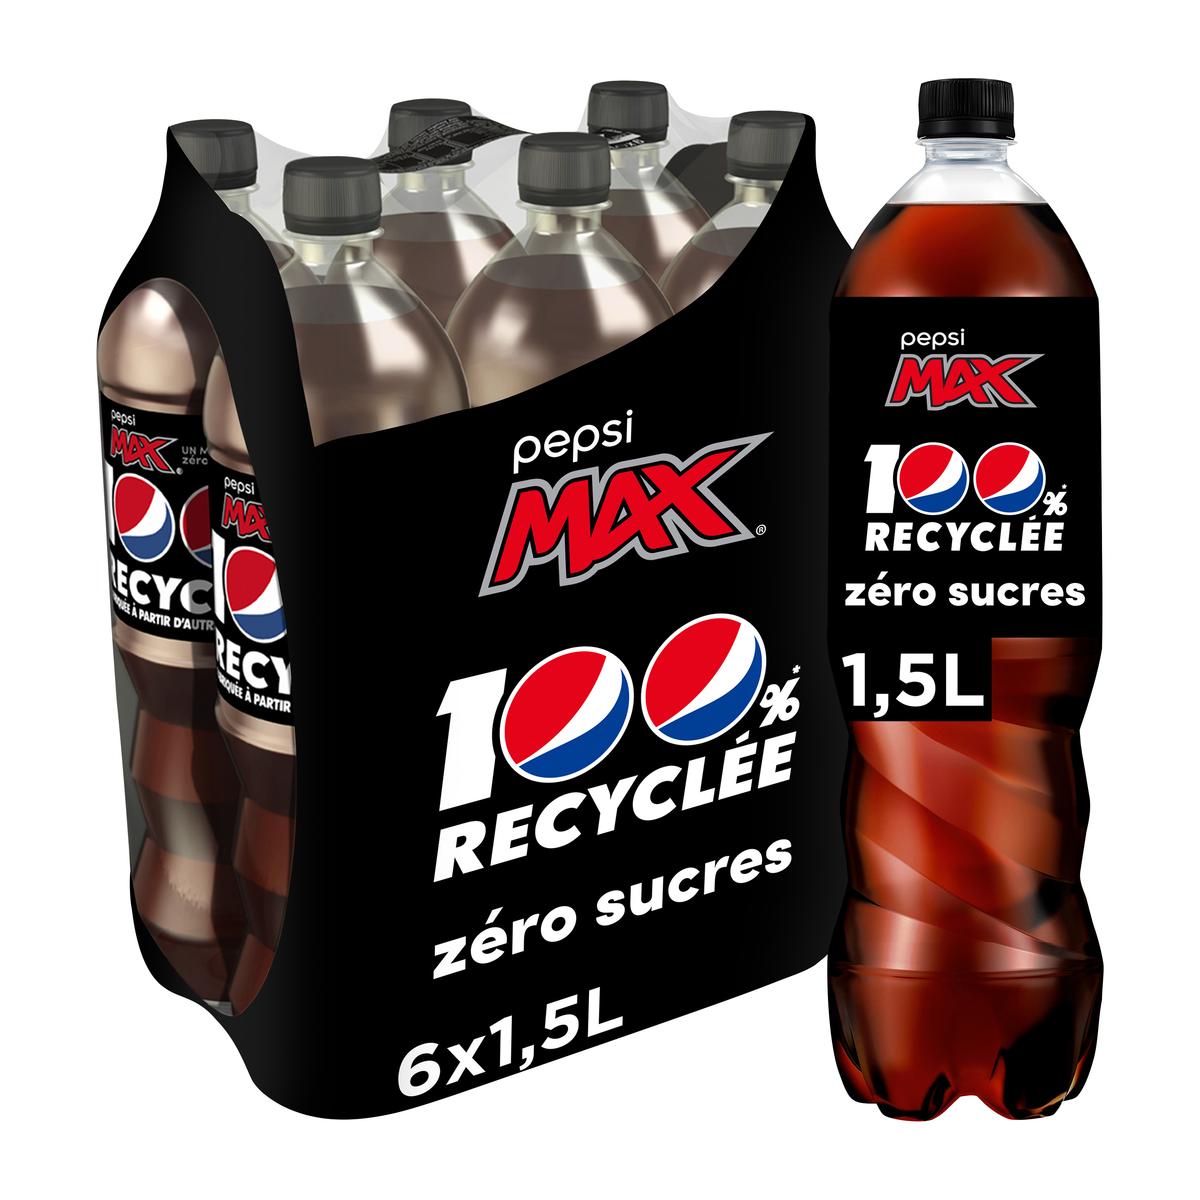 Achat / Vente Promotion Pepsi Zéro sucres, Lot de 6 bouteilles de 1.5L